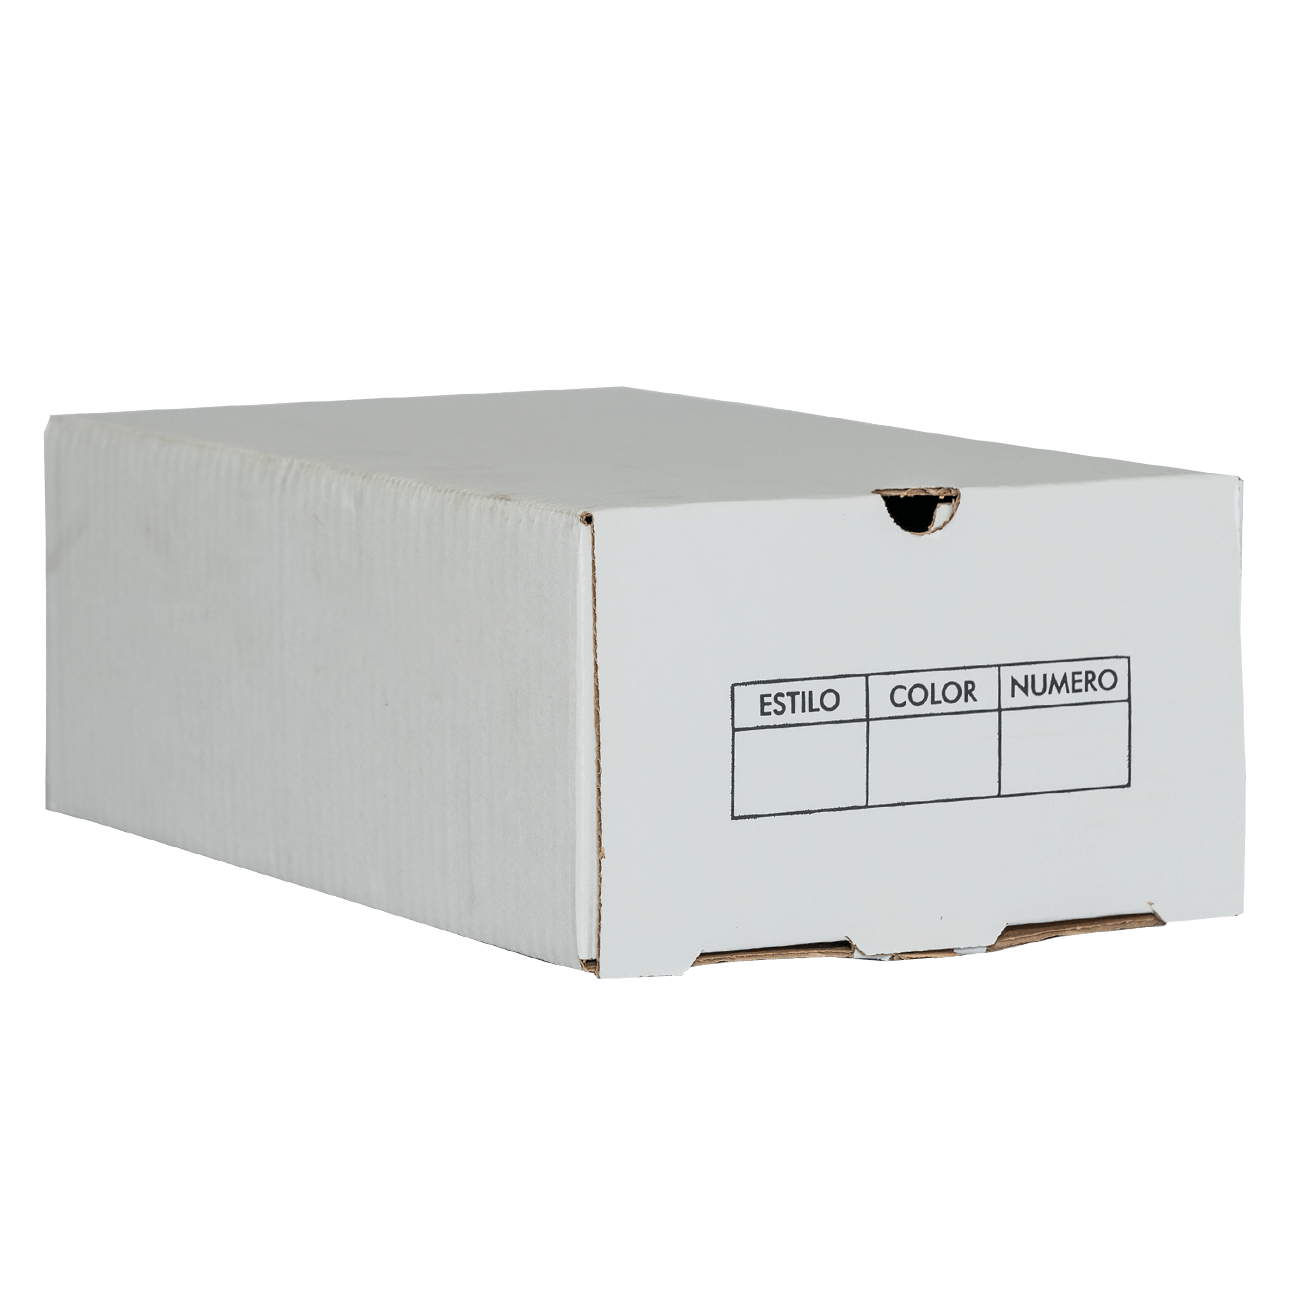 Caja 330x190x120 Zapato Hombre - Master Cajas